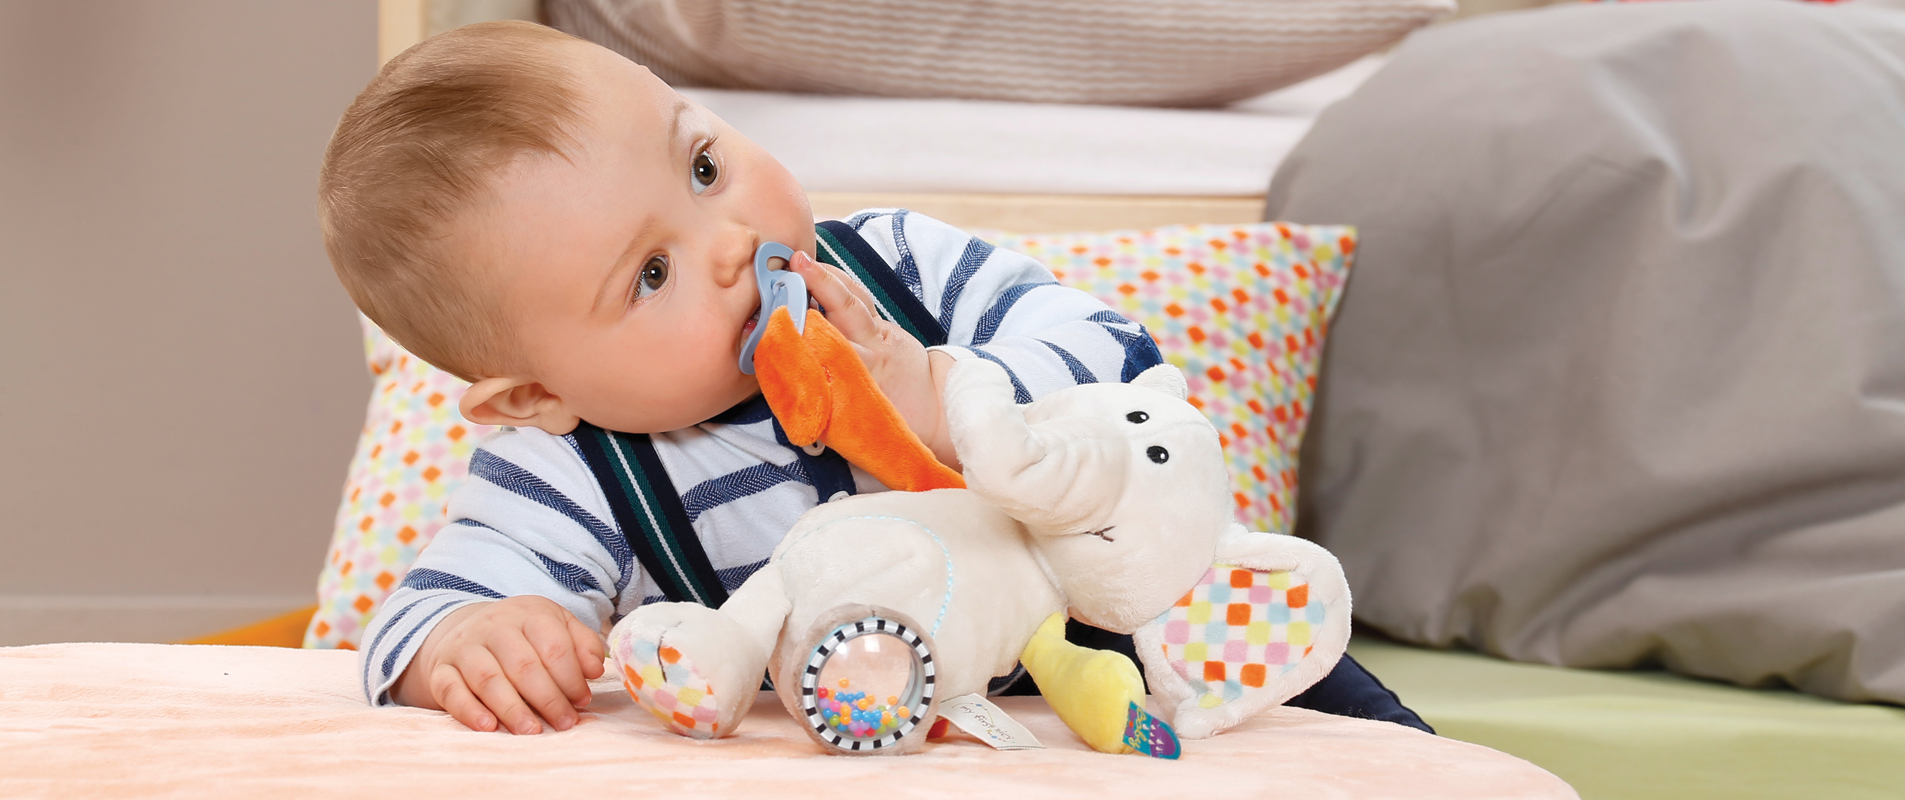 30 unidades metal Chupete Clips para Baby Cute Infant Chupete Cierres divertido accesorios 